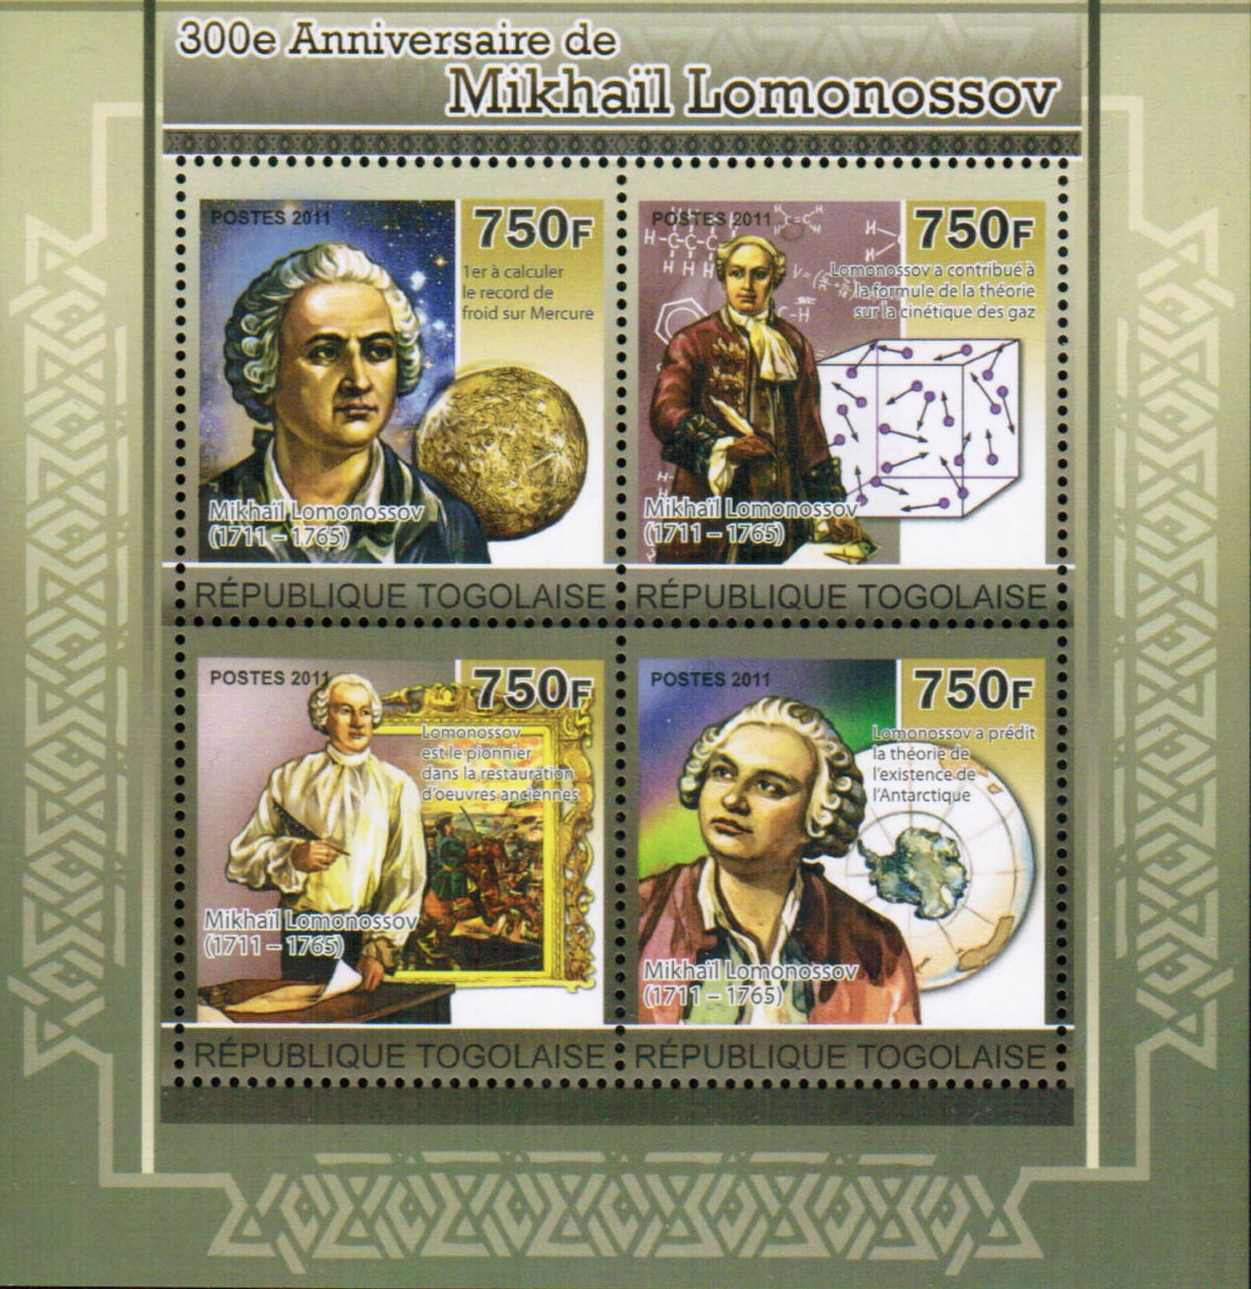 Mikhail Lomonosov, Poltava Battle